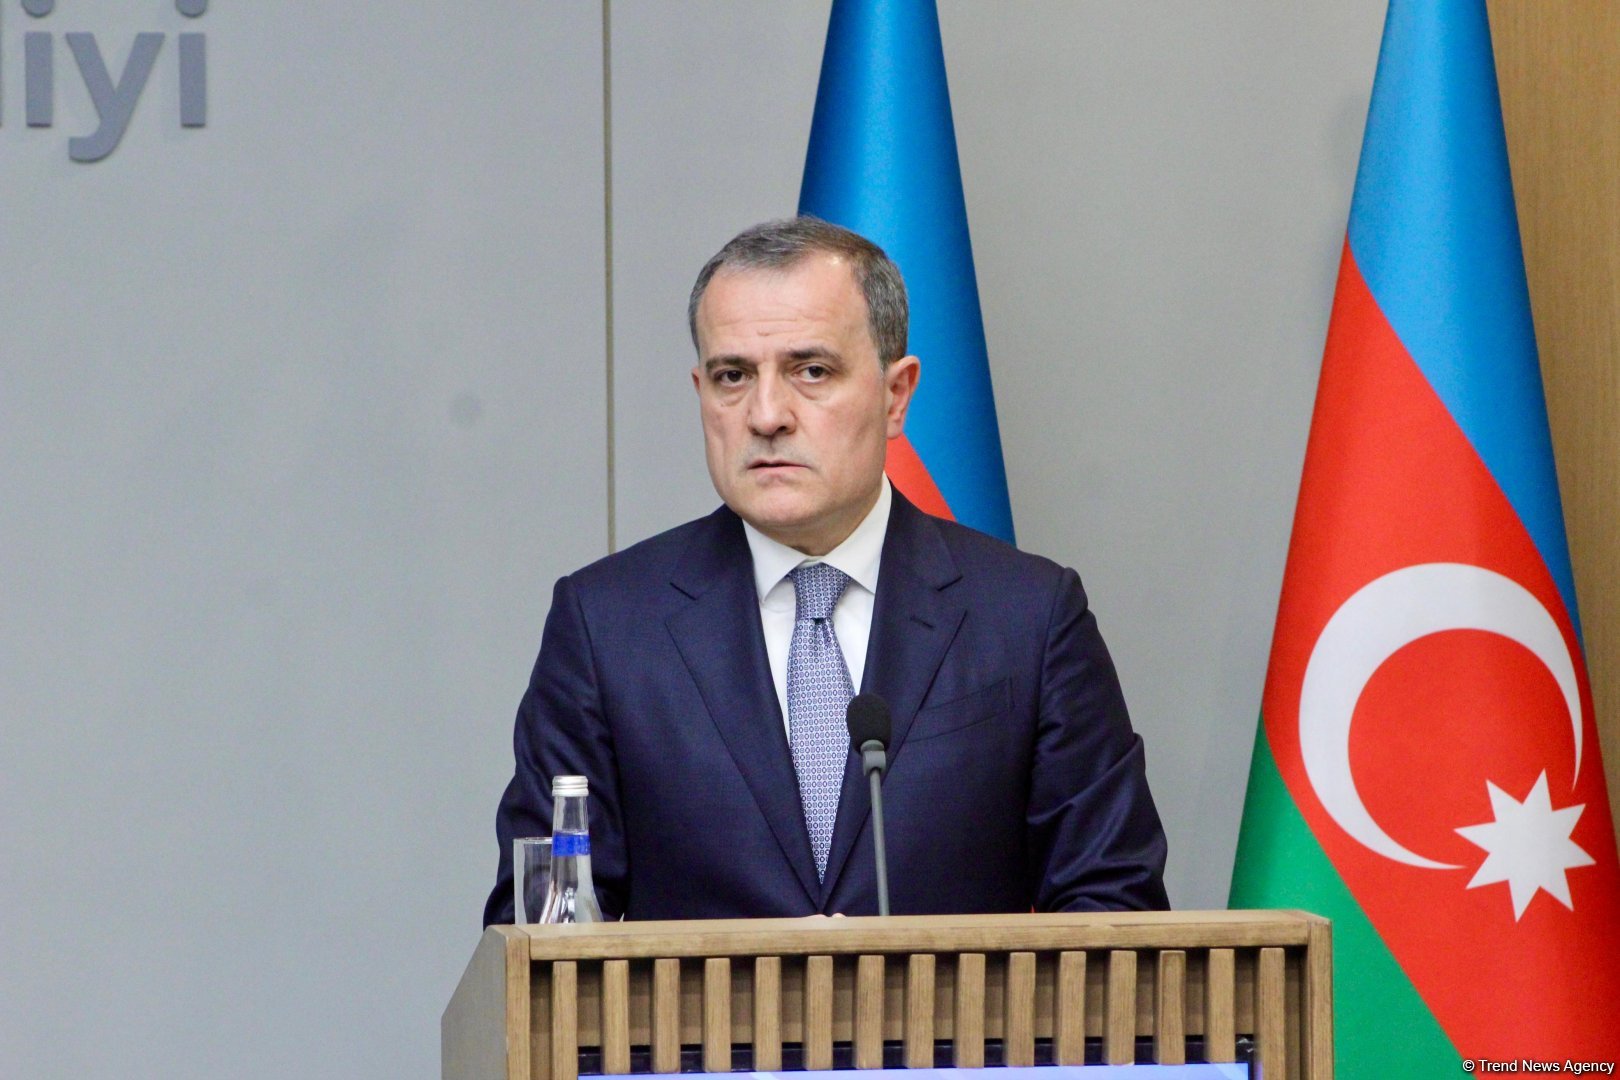 Прямые переговоры между Азербайджаном и Арменией являются самым позитивным форматом - Джейхун Байрамов